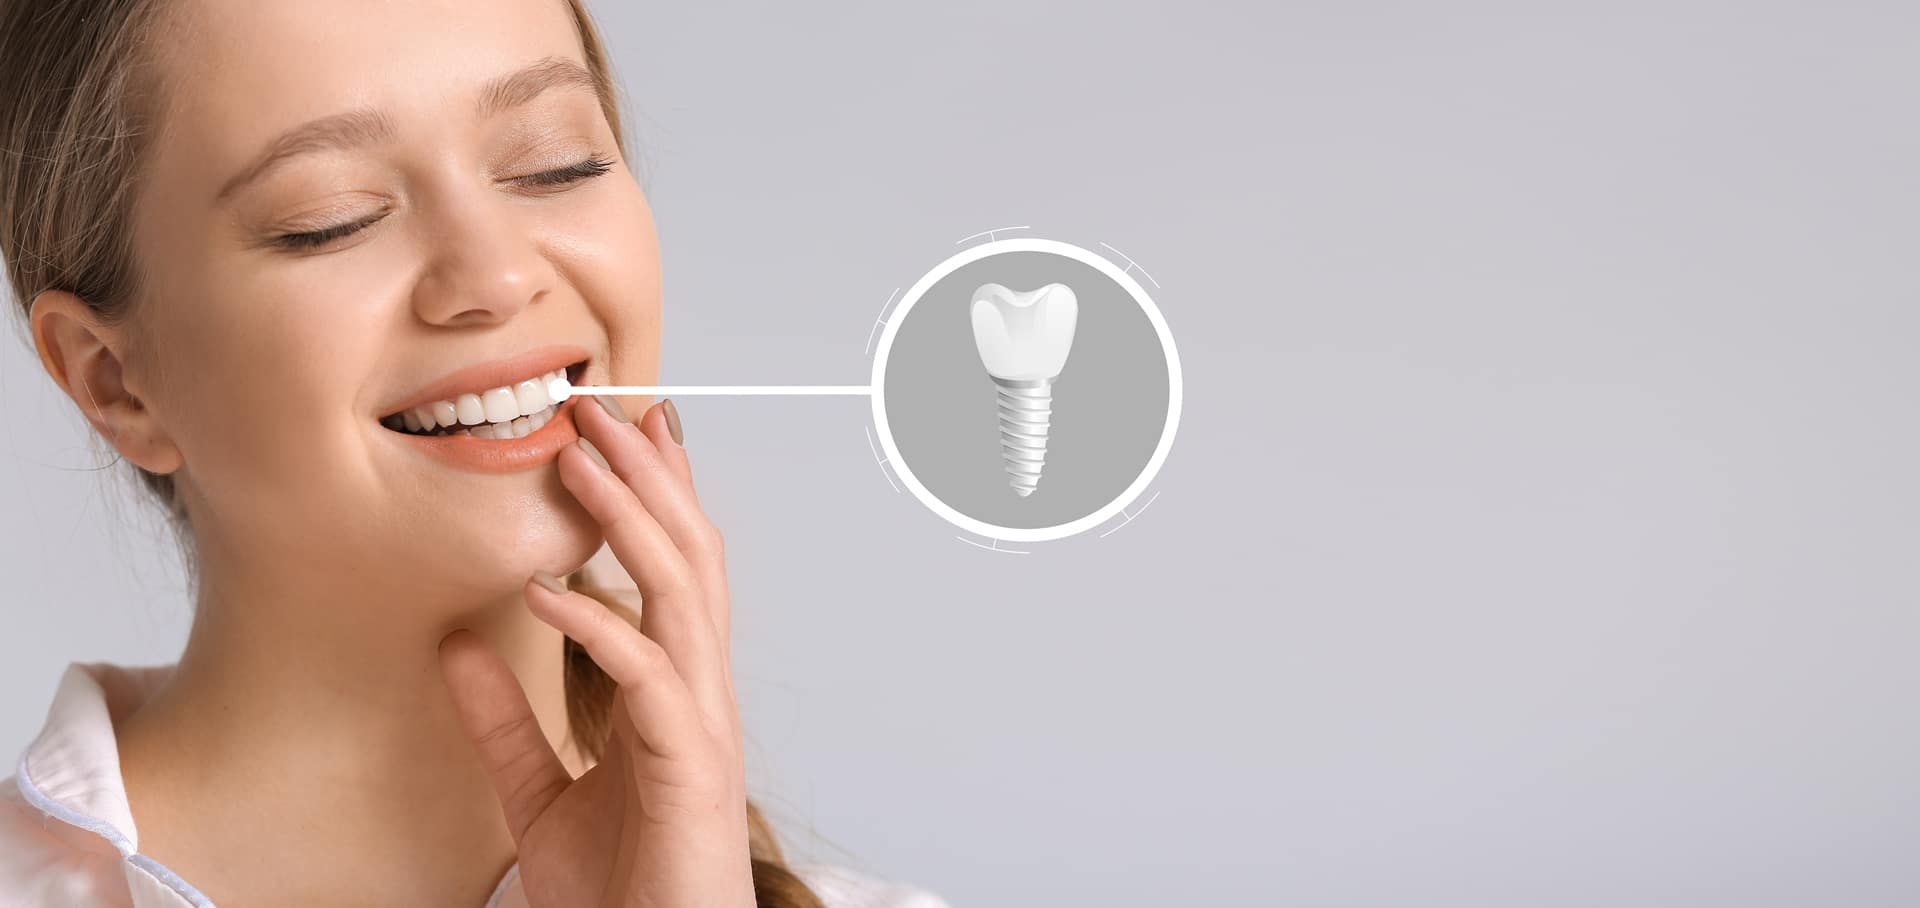 Exploring Dental Implants: Types, Candidates, FAQs, and La Crescenta, California